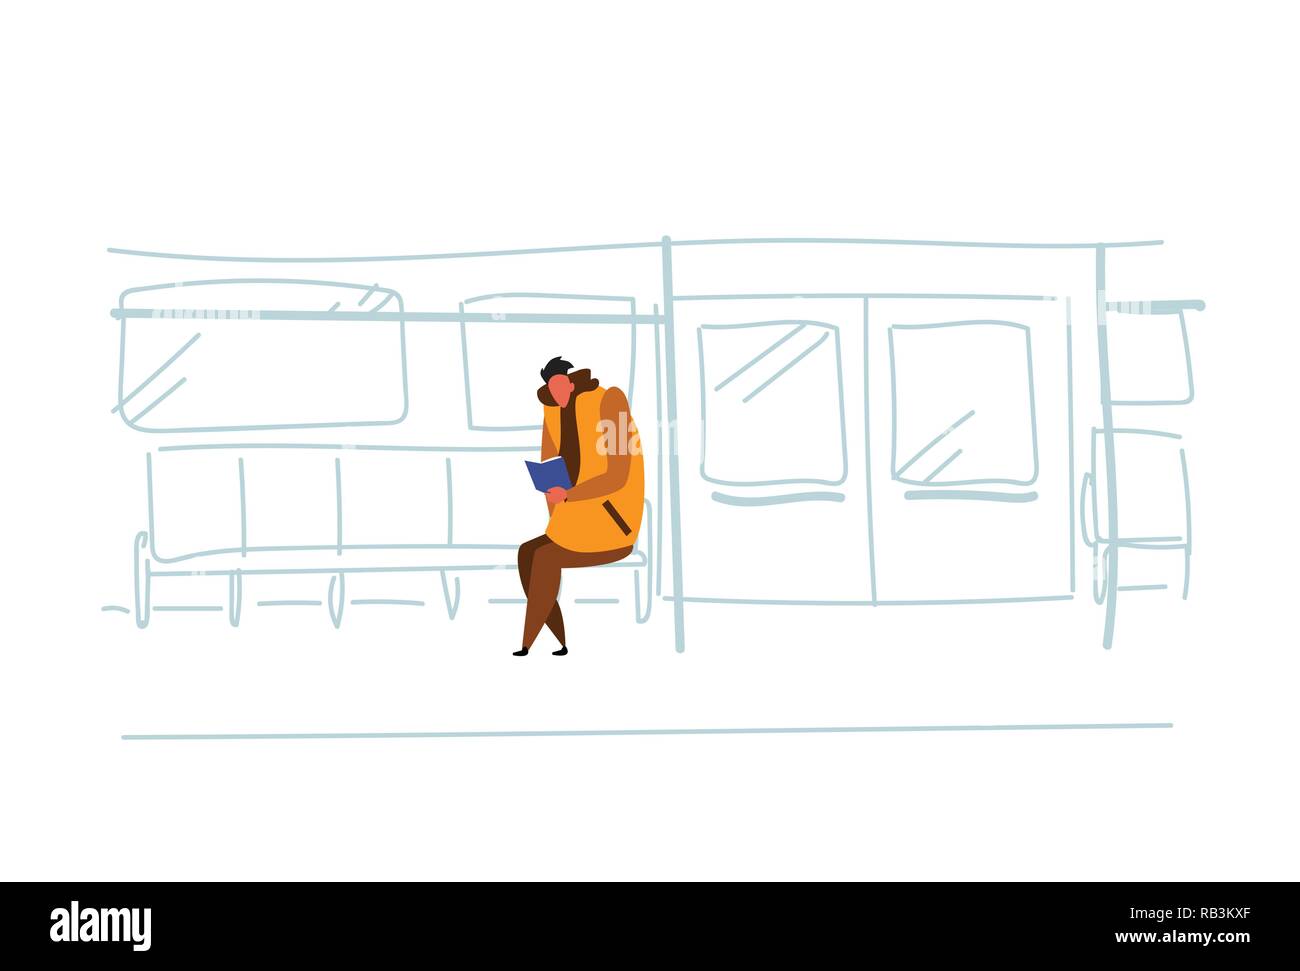 Legerer Mann u-bahn Passagiere sitzen u-bahn Buch Interior View Public Underground City Transport Konzept männliche Zeichentrickfigur Skizze doodle horizontale Lesung Stock Vektor